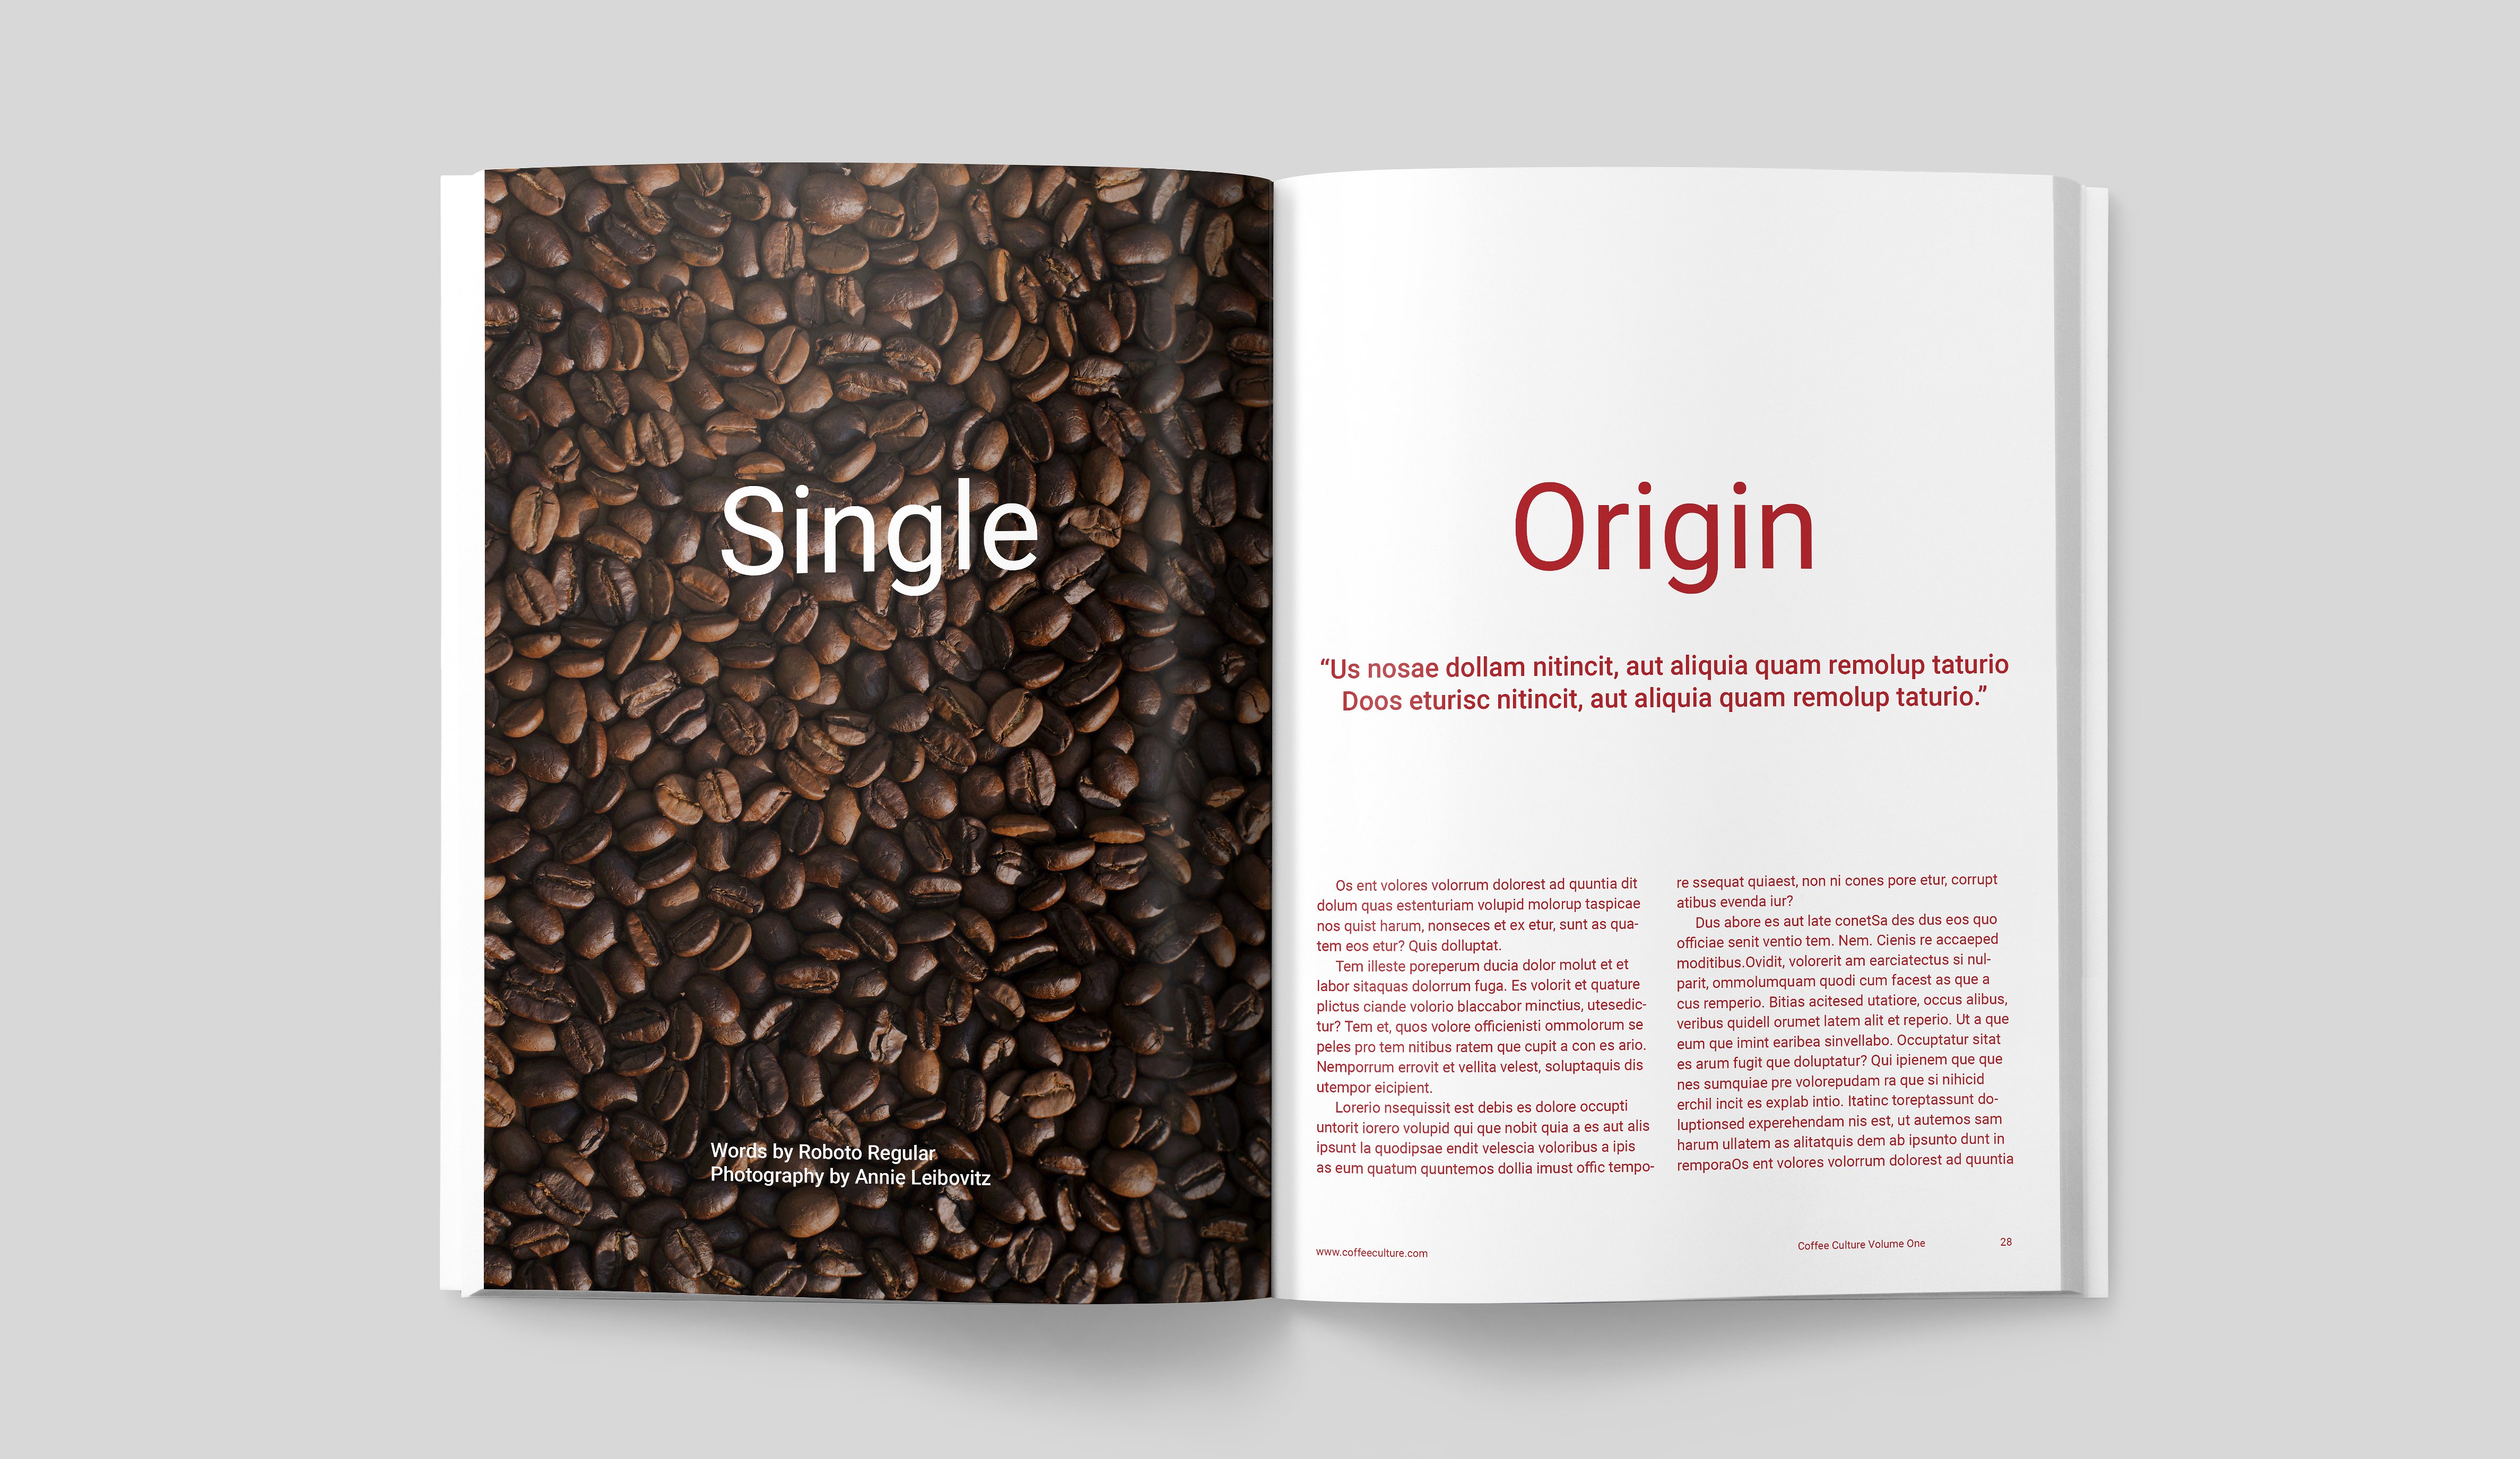 咖啡文化画册 COFFEE CULTURE MAGAZINE插图11